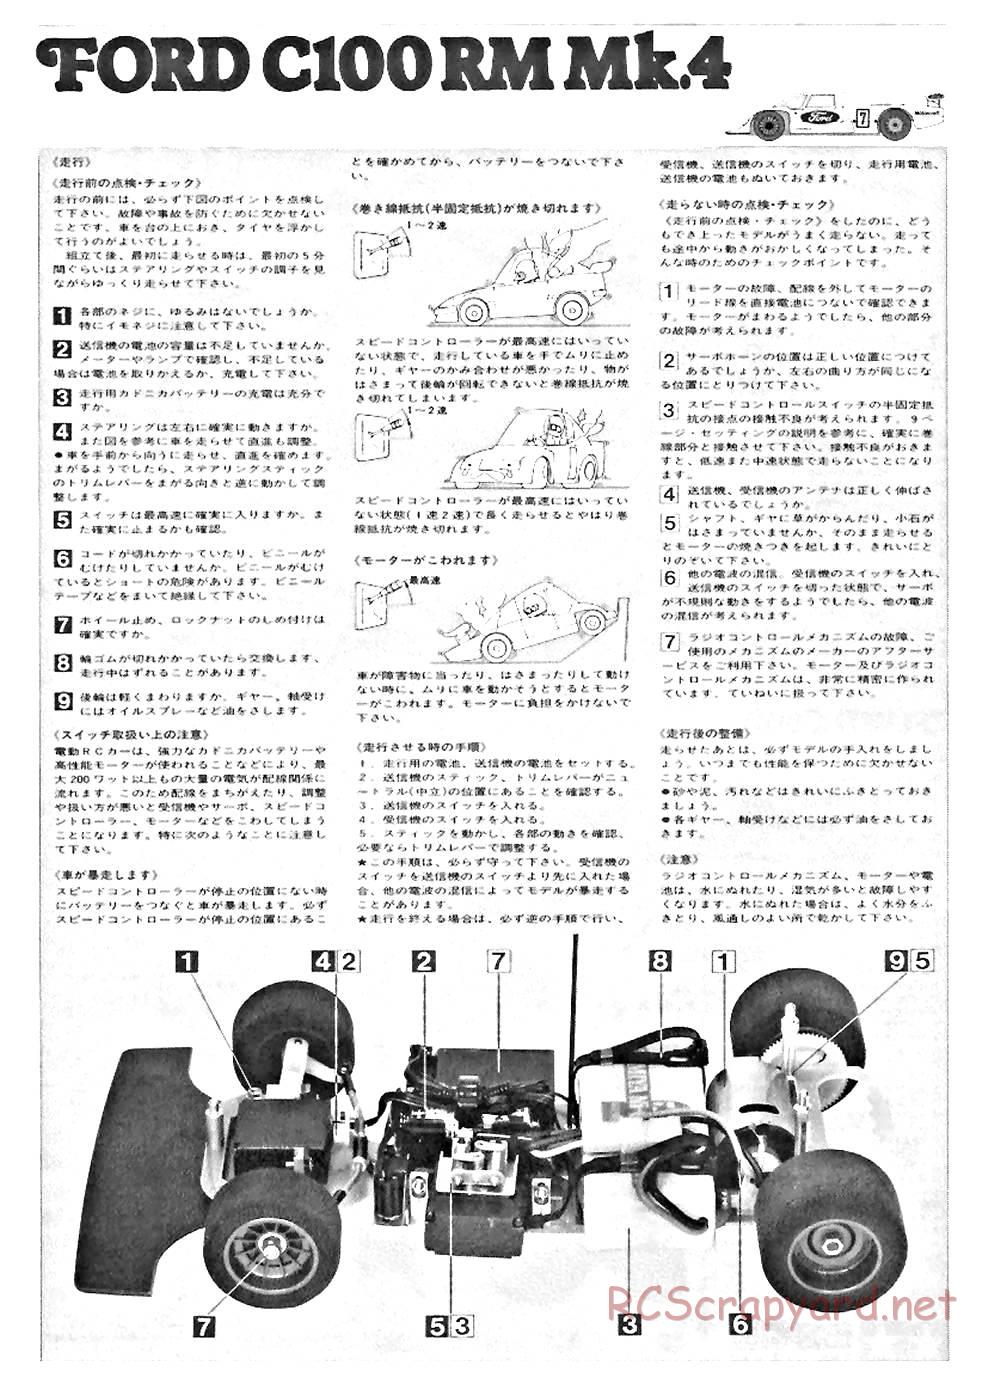 Tamiya - Ford C100 - RM MK.4 - 58033 - Manual - Page 10